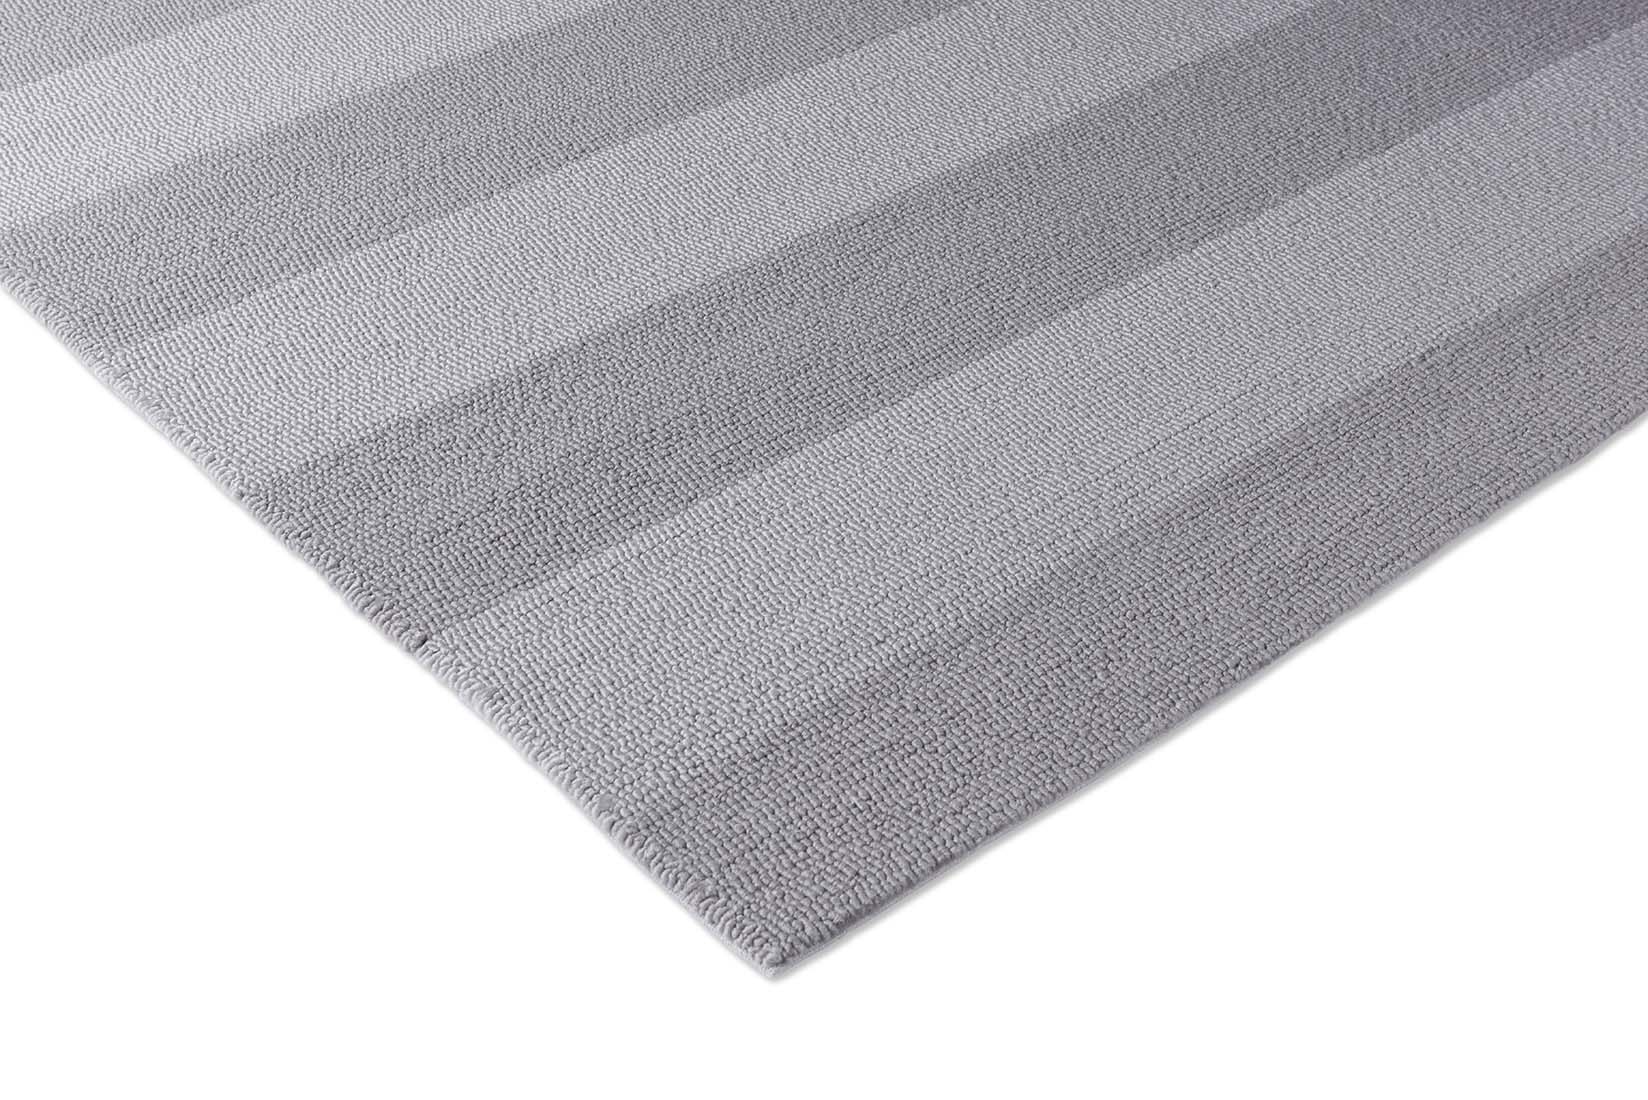 Grey stripe indoor/outdoor polypropylene rug
